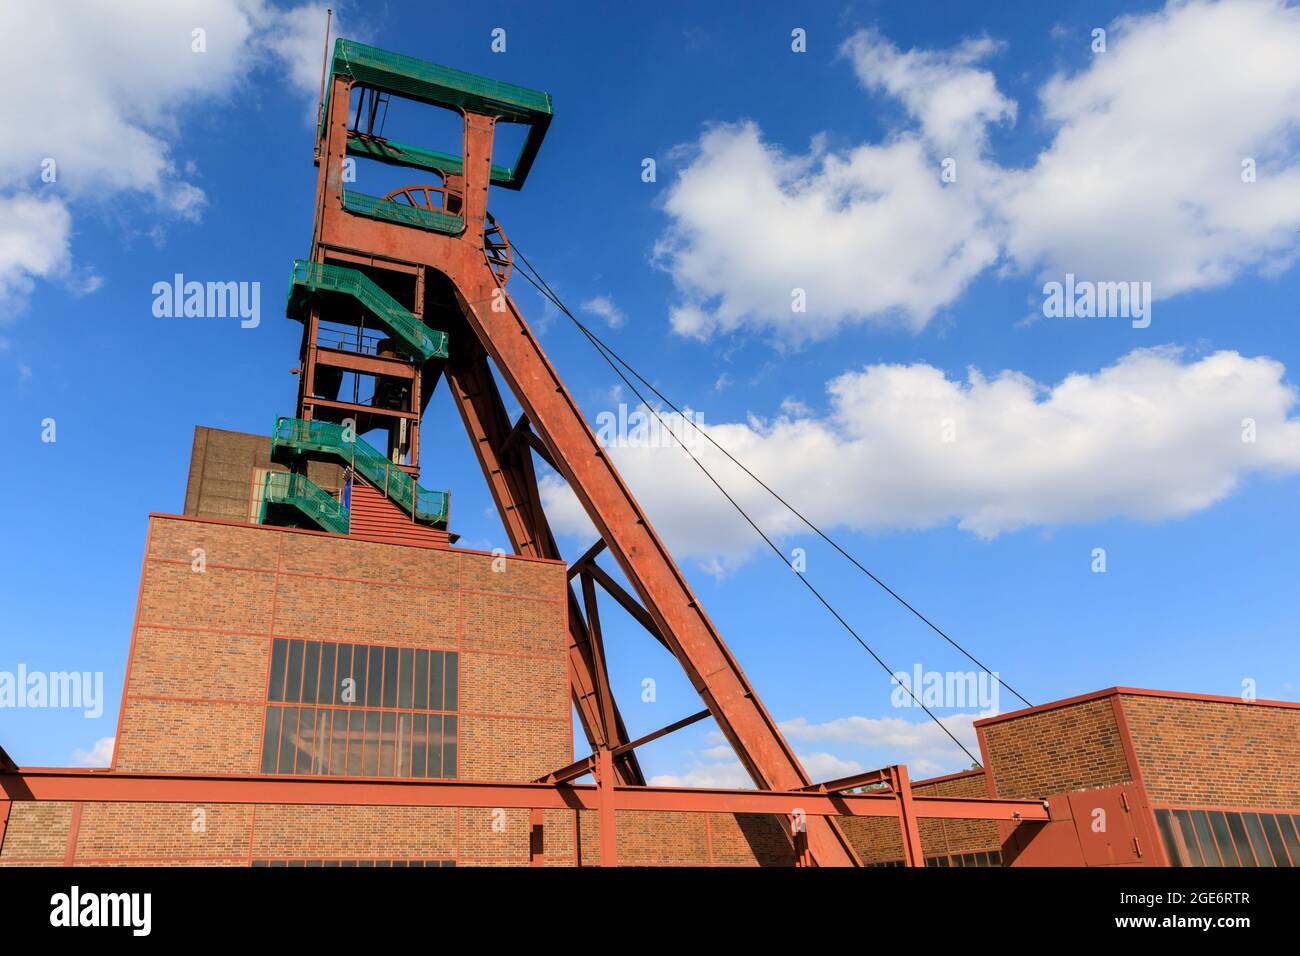 Tour sinueuse, complexe industriel de la mine de charbon Zeche Zollverein, site classé au patrimoine mondial de l'UNESCO, région de la Ruhr, Essen, Allemagne Banque D'Images